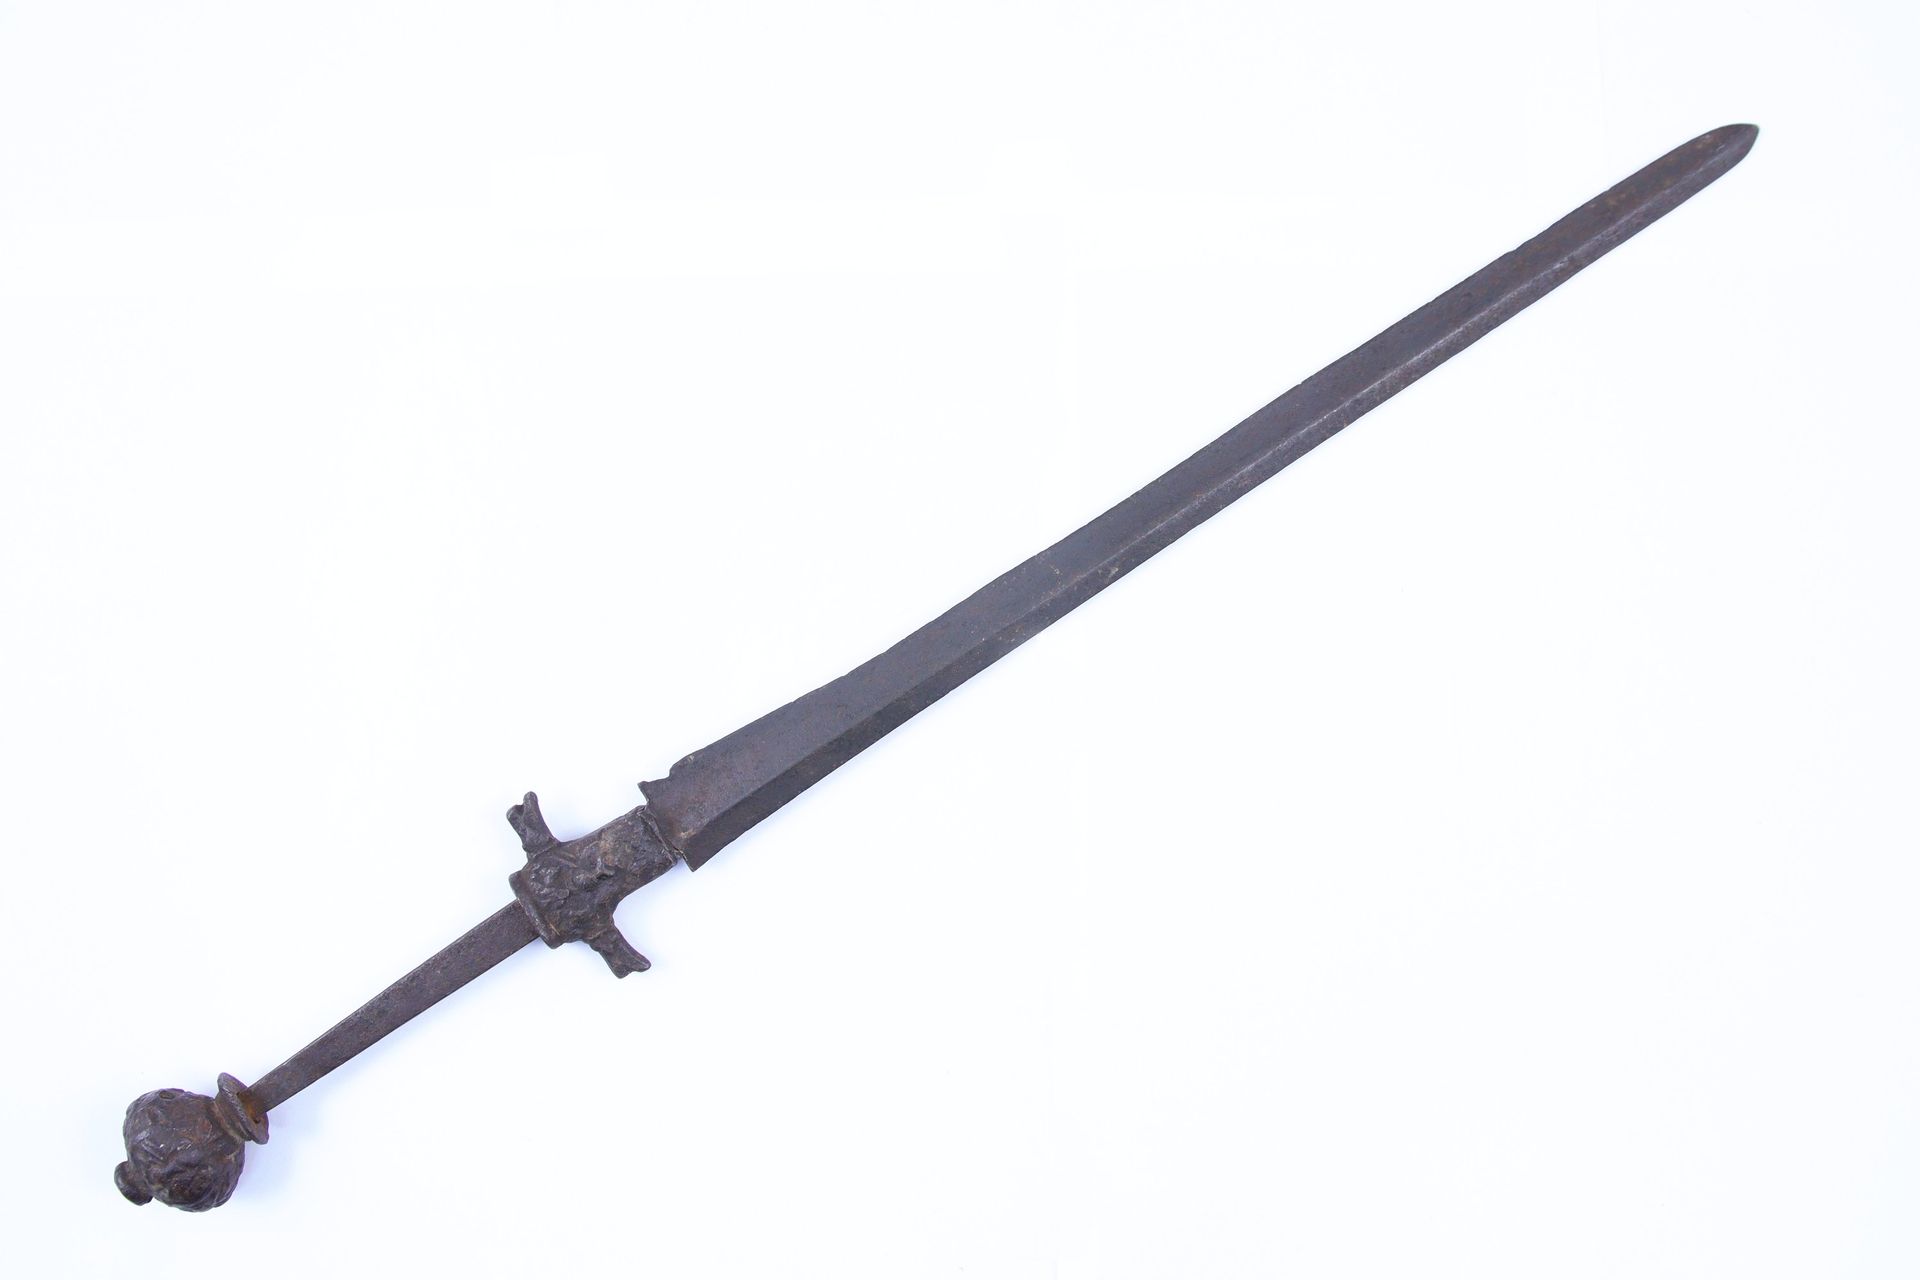 Null 匕首

铁质鞍座和蓖条。刀刃带刃。 

17 世纪，出土文物。 

长 50 厘米。 
(原状，缺失）